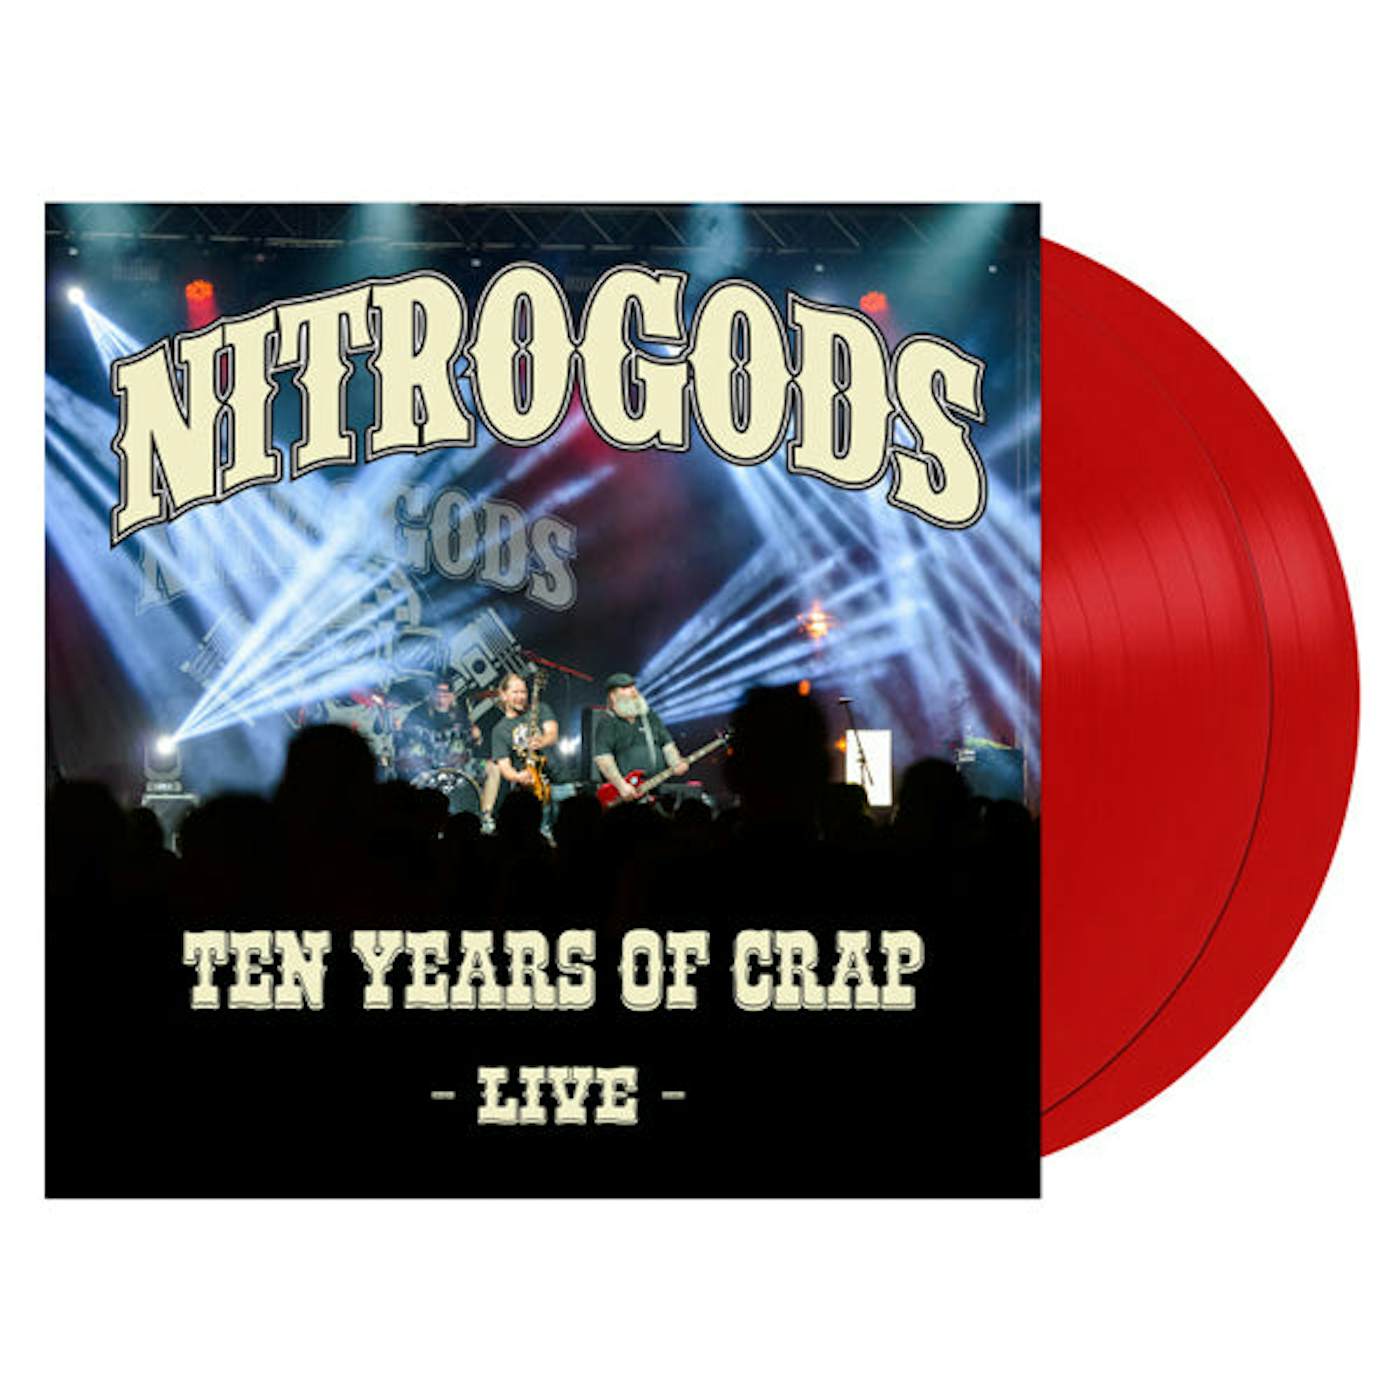 Nitrogods LP - Ten Years Of Crap (Red Vinyl)